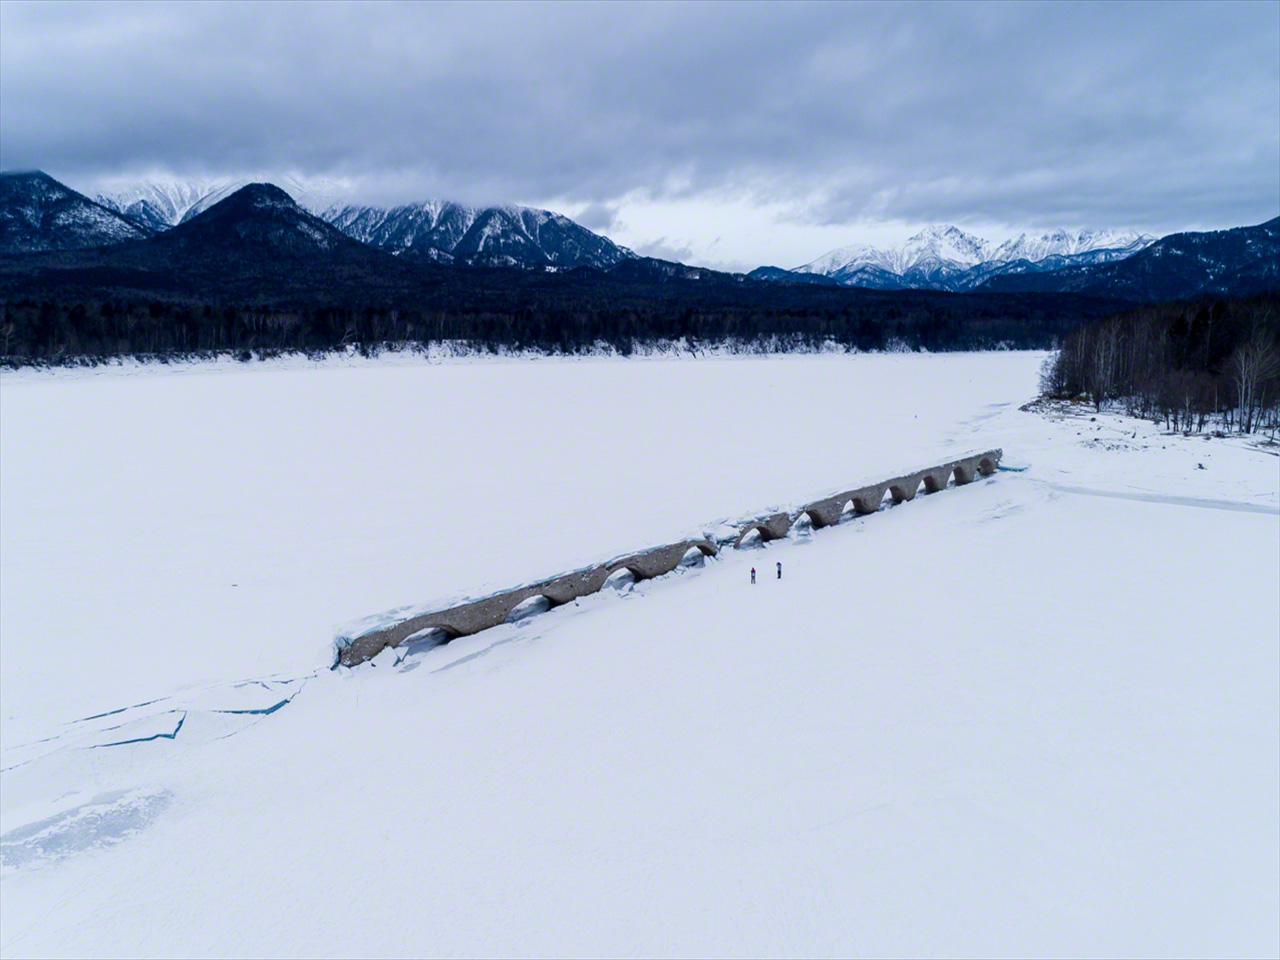 1月になるとダム湖の水位が下がり、凍結した湖面に姿を現す。背景を東大雪山系の山並みが取り囲む